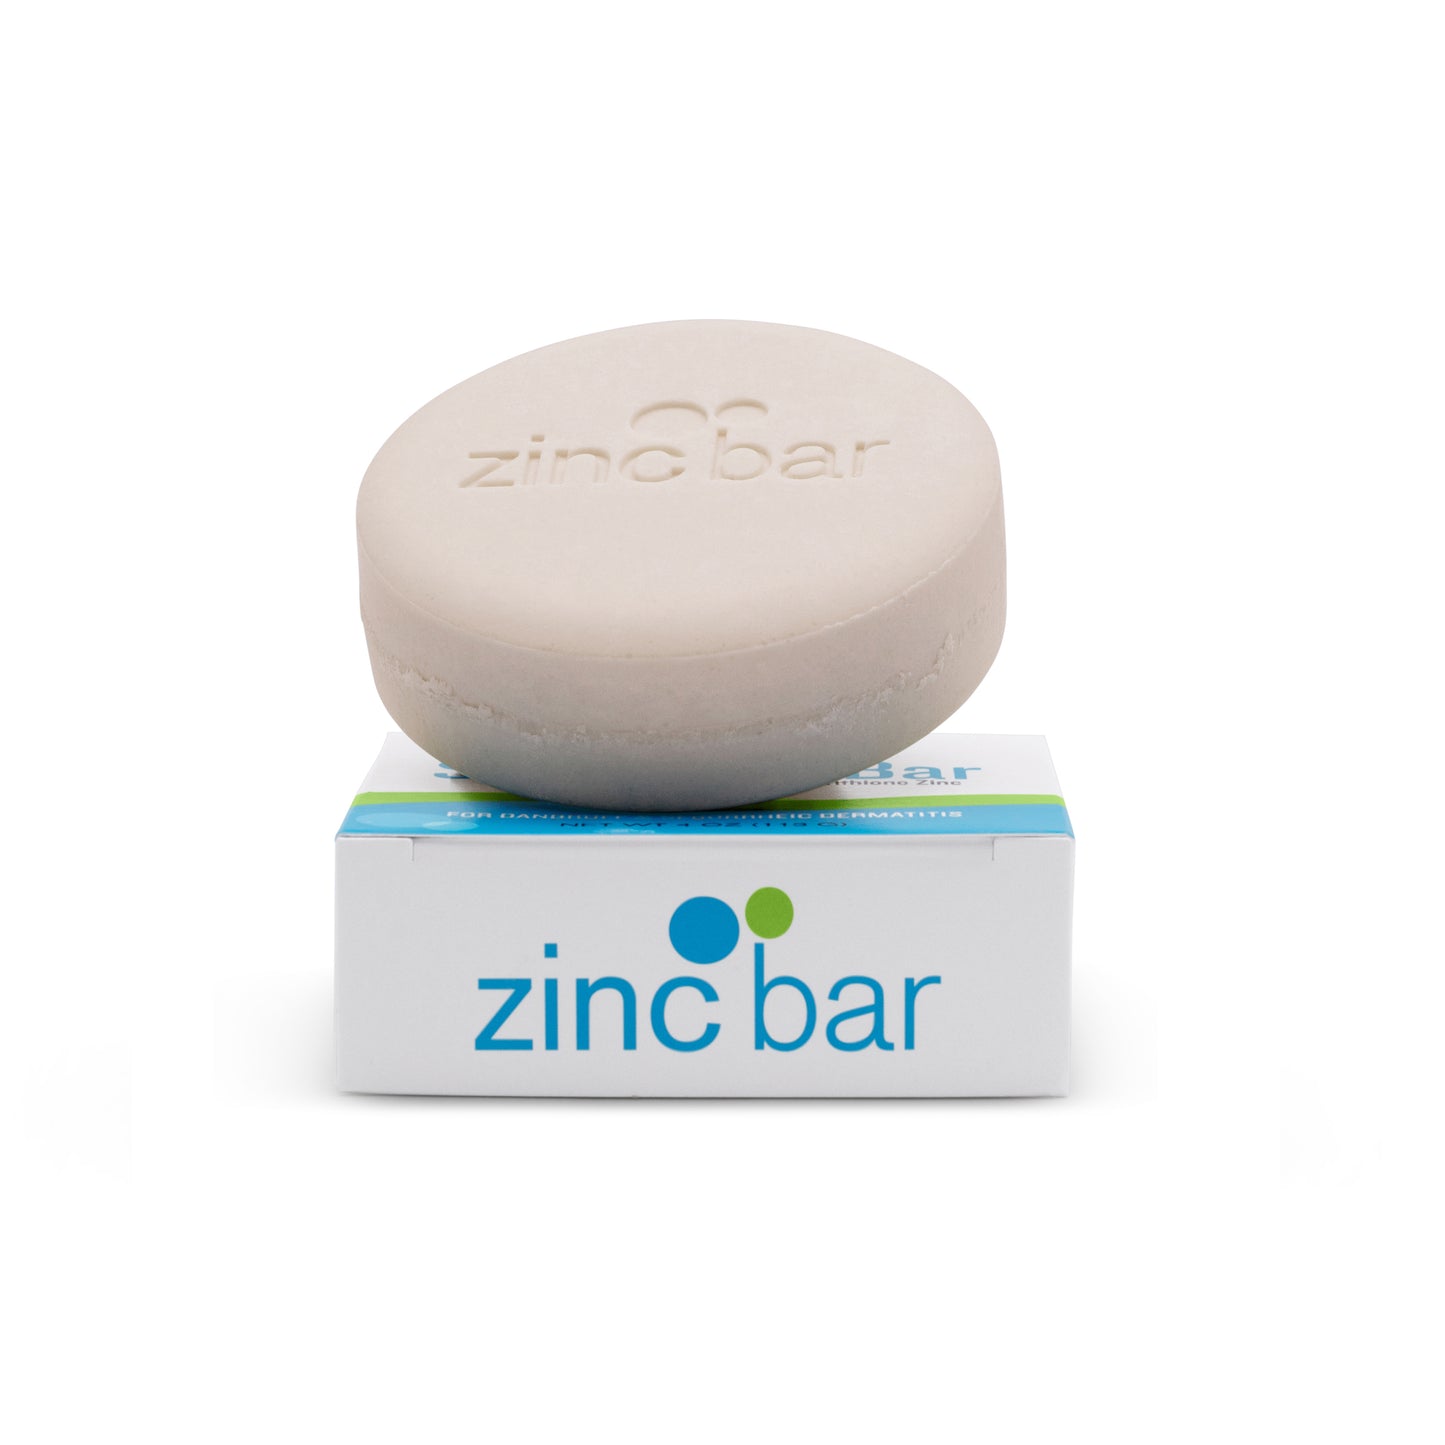 2% Pyrithione Zinc Dandruff & Seborrheic Dermatitis Shampoo Bar - Peppermint